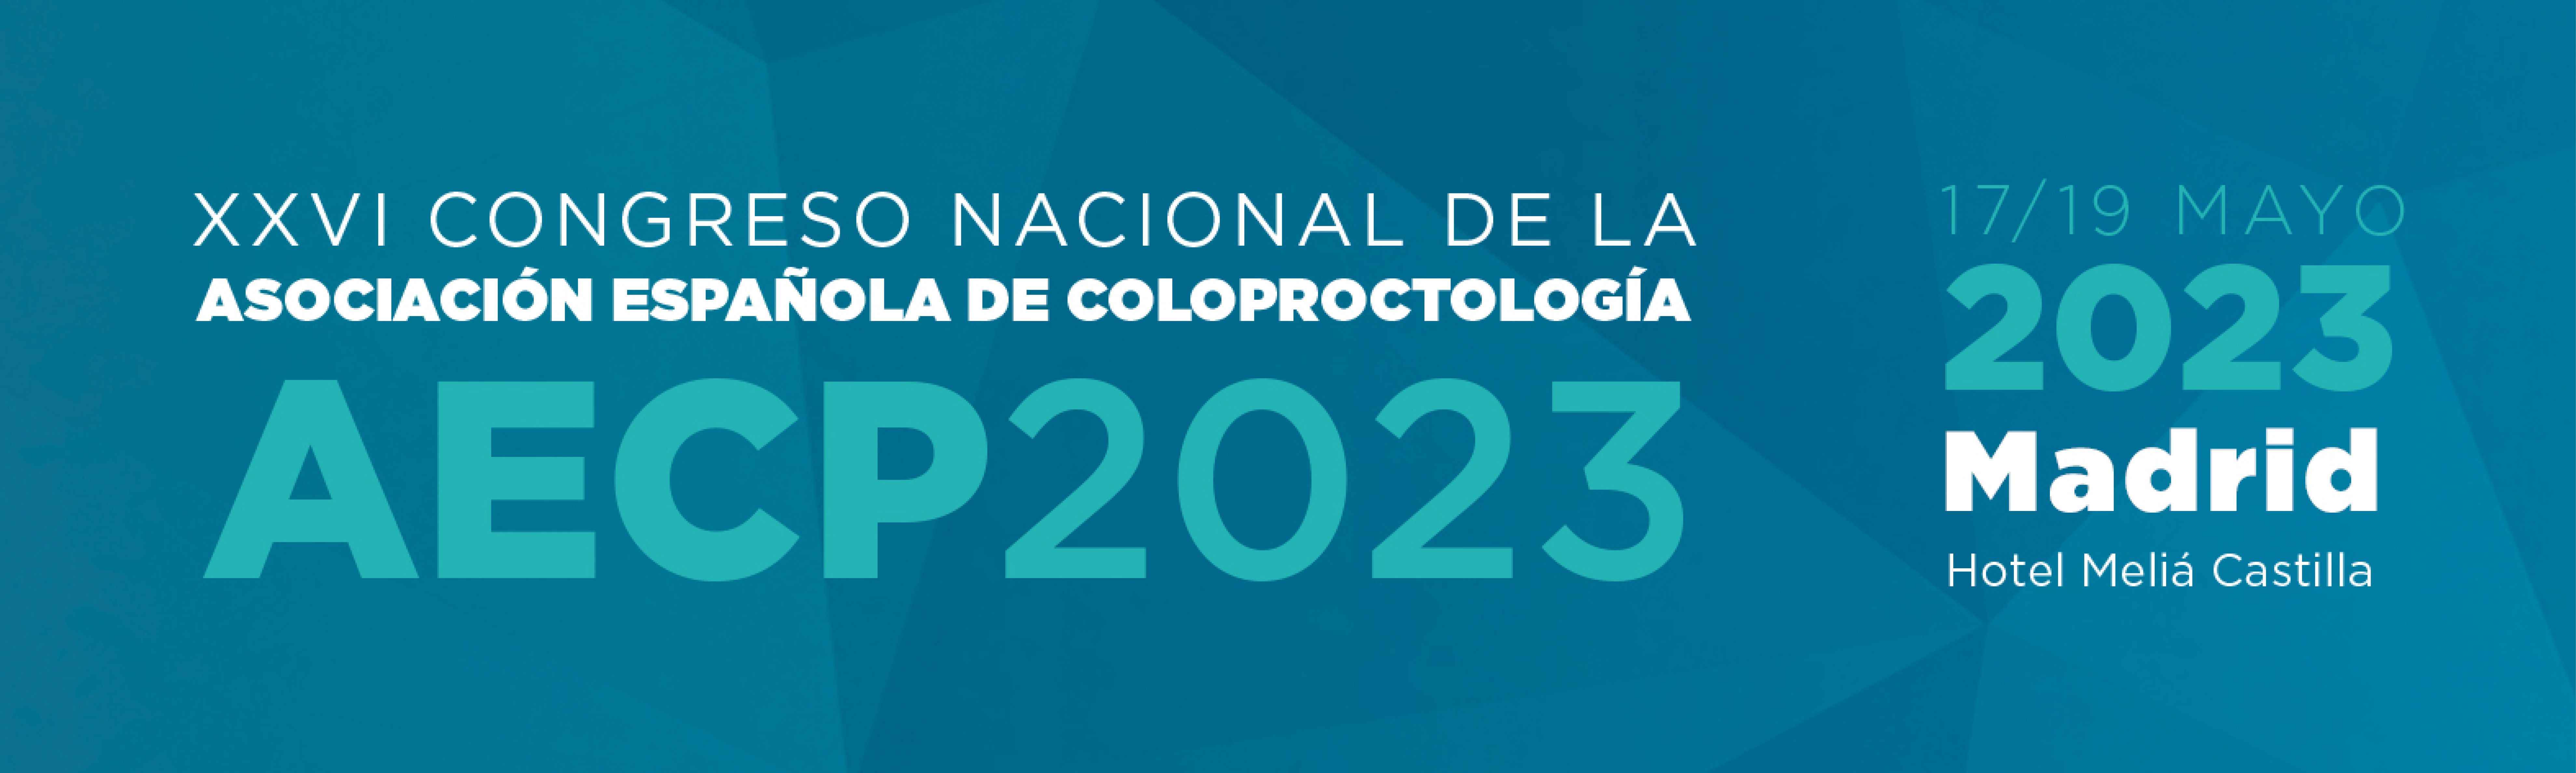 XXVI Congresso Nazionale dell’Associazione Spagnola di Coloproctologia (AECP), 17-19 maggio 2023, Madrid